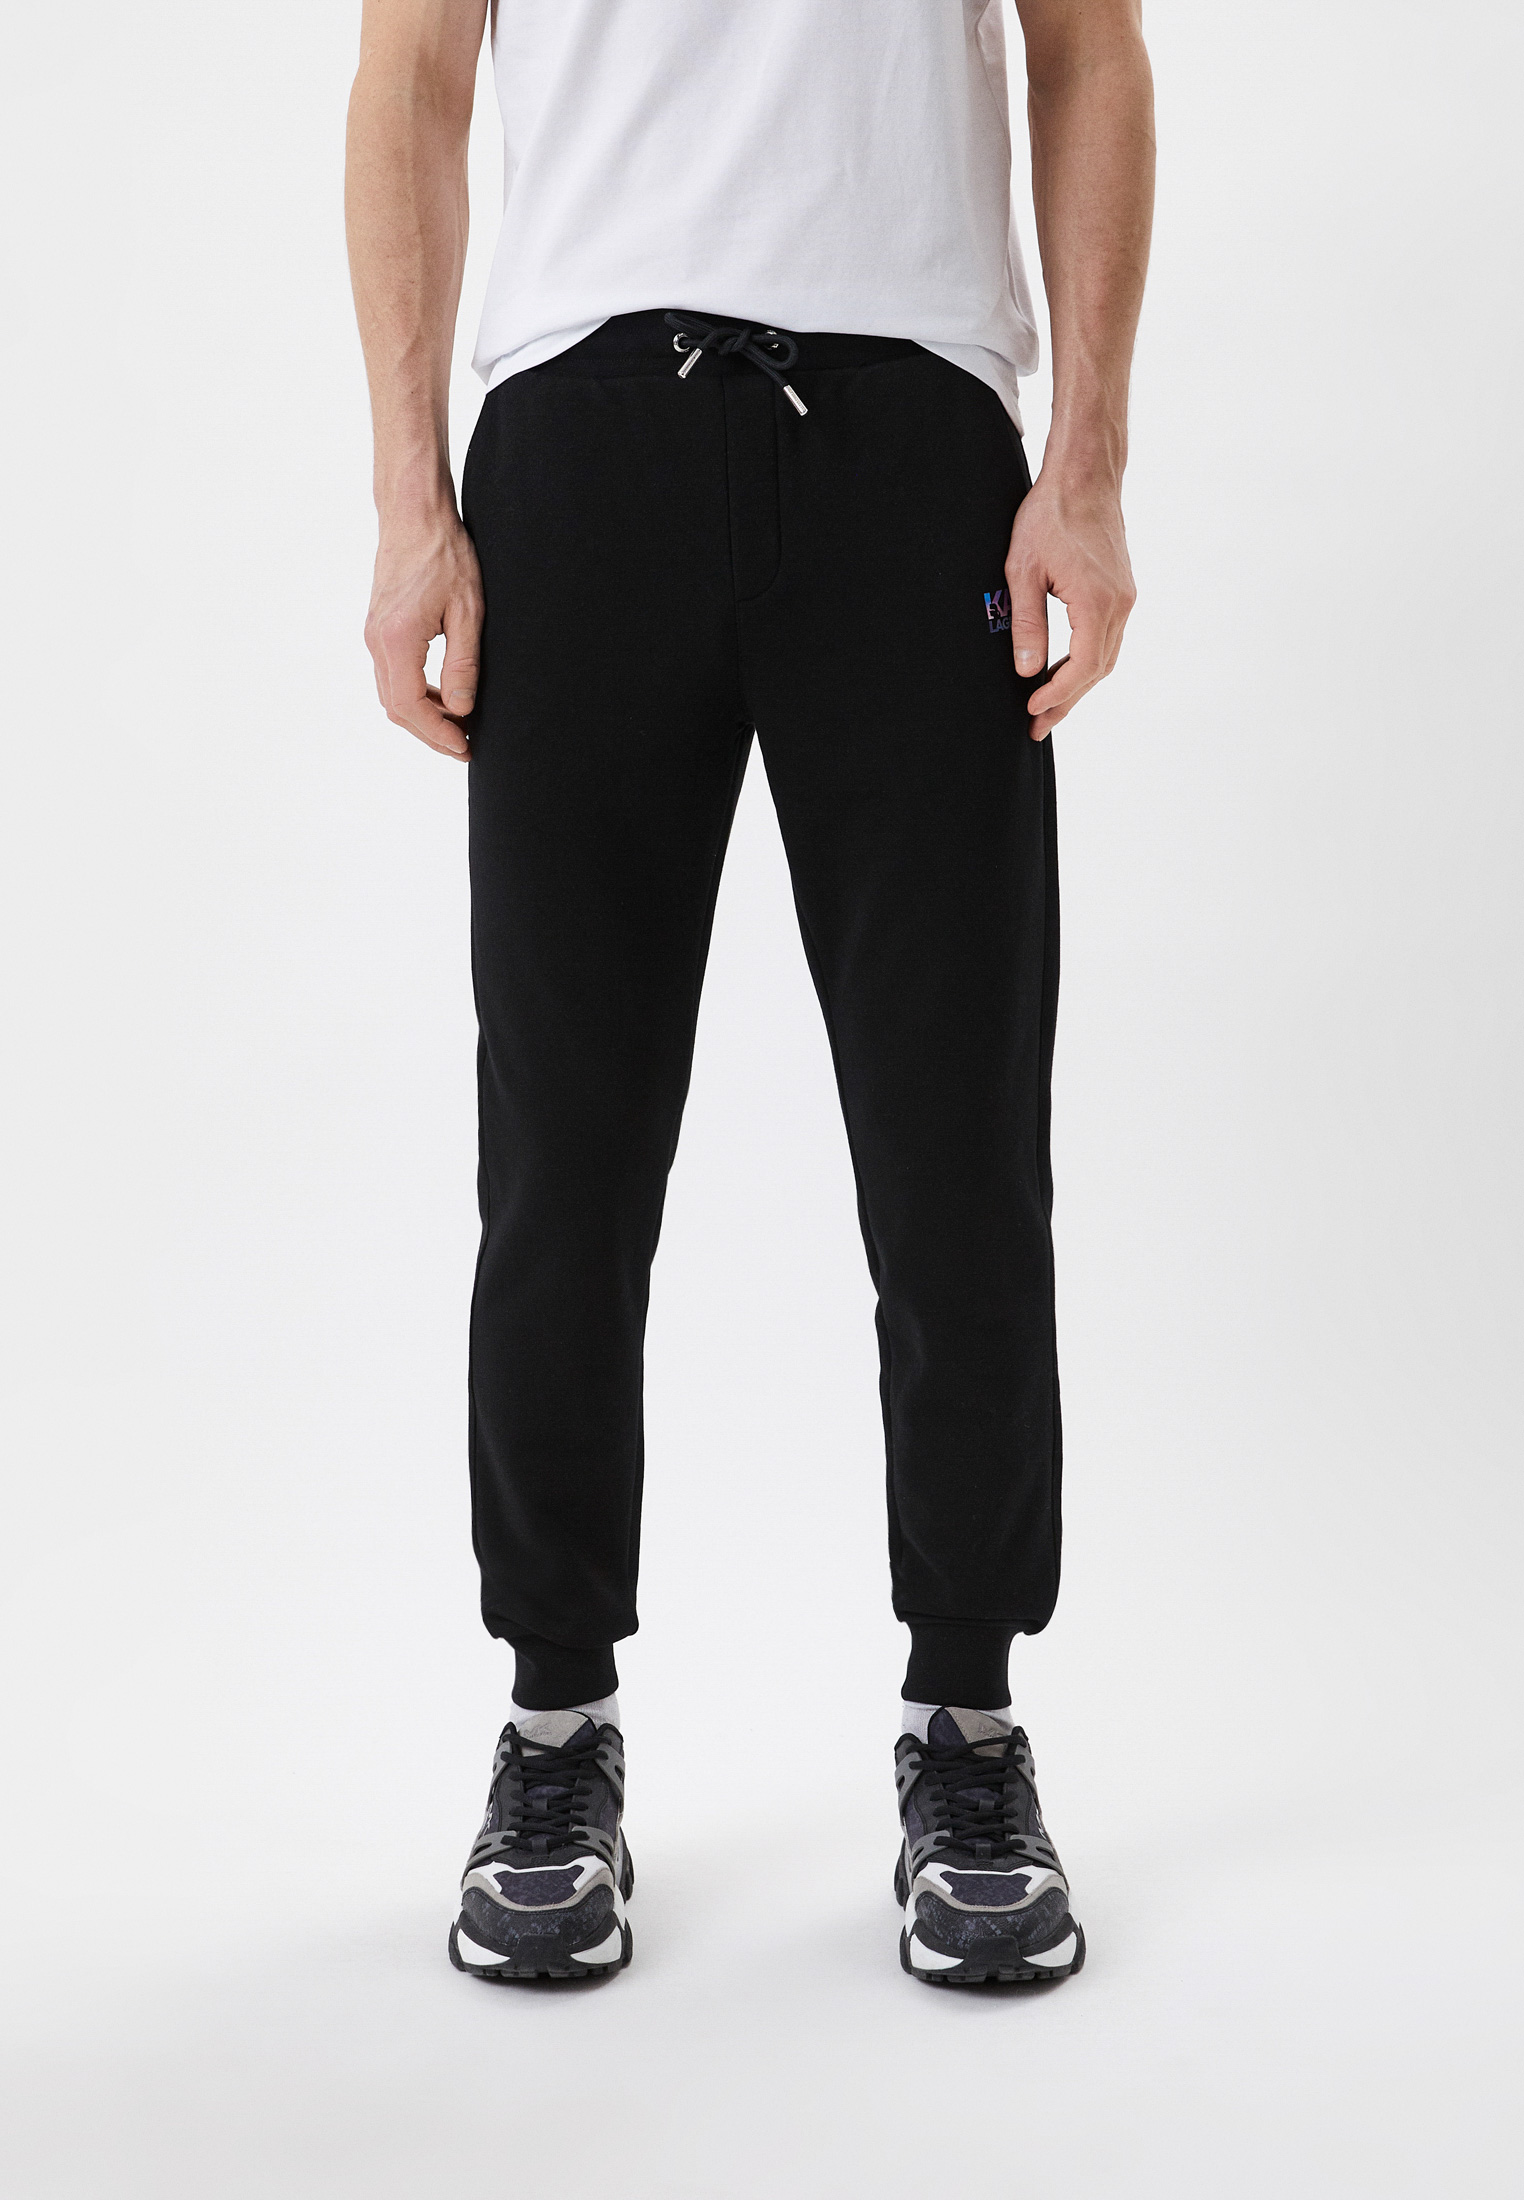 Мужские спортивные брюки Karl Lagerfeld (Карл Лагерфельд) 705071-531900: изображение 1